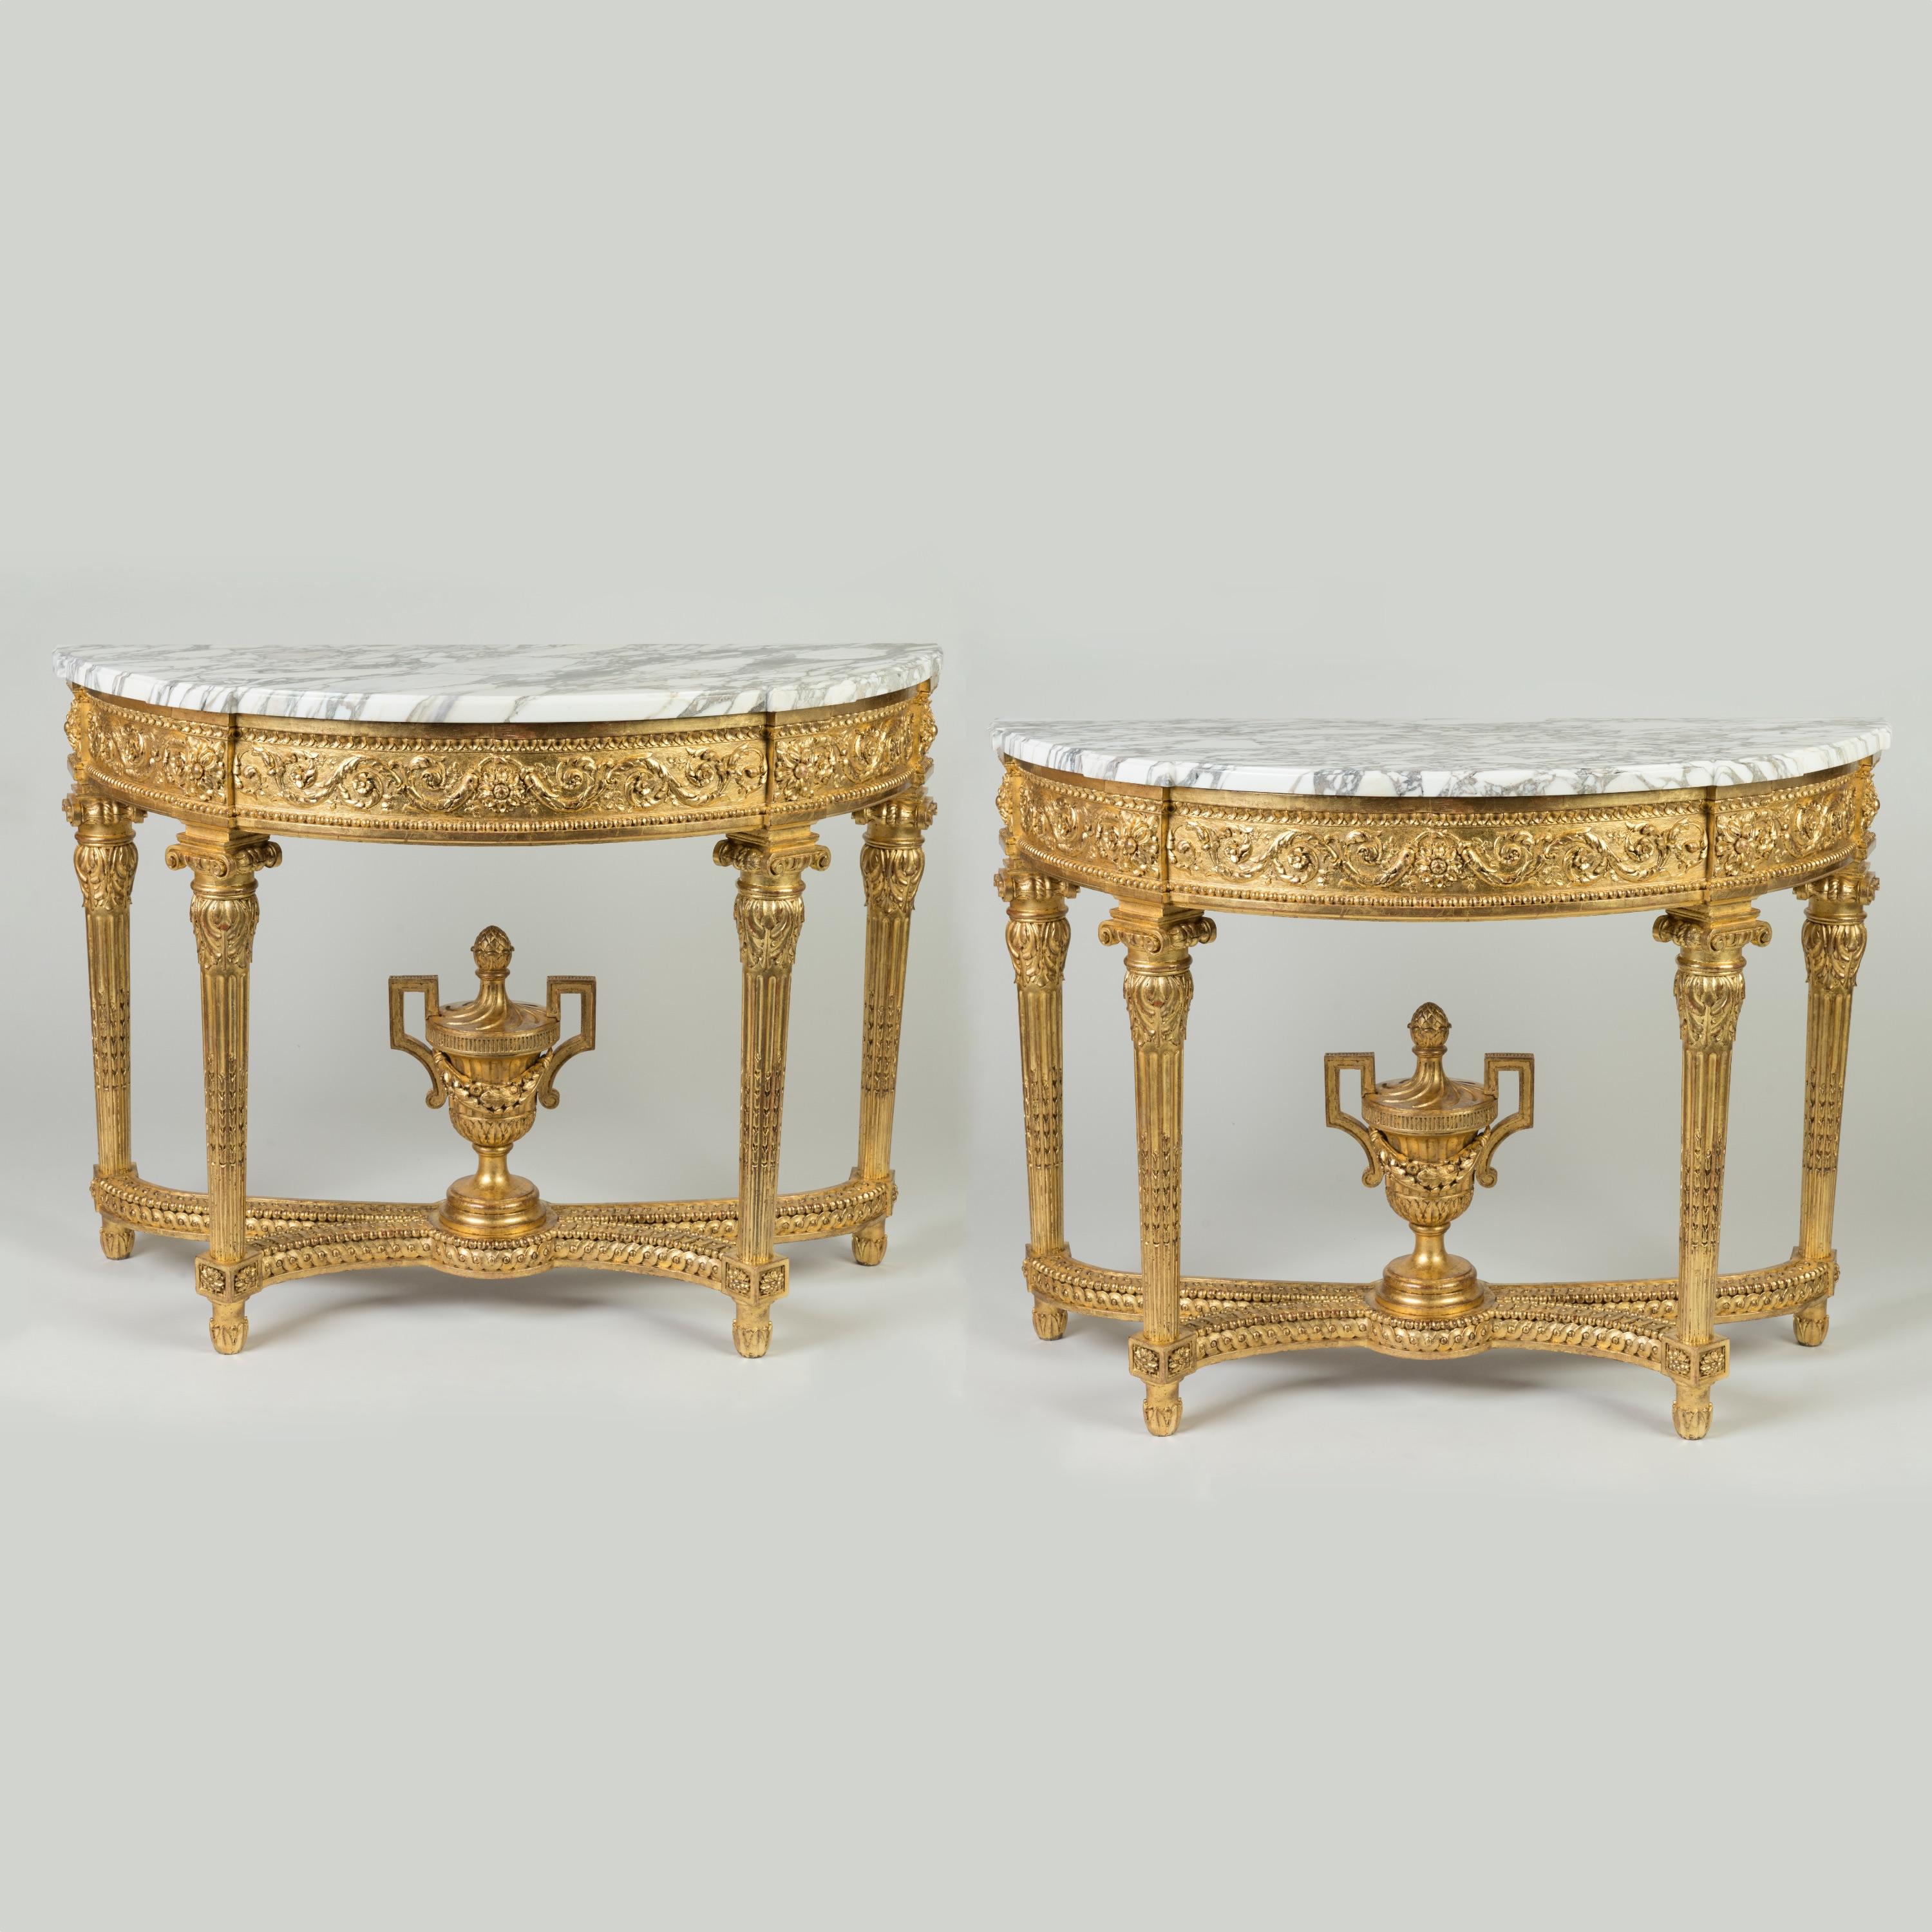 Une importante paire de tables console majestueuses
A la manière de Louis XVI

Construite en bois sculpté et doré, elle repose sur quatre pieds cannelés ornés de bourgeons de lotus et terminés par des chapiteaux ioniques ; elle présente des